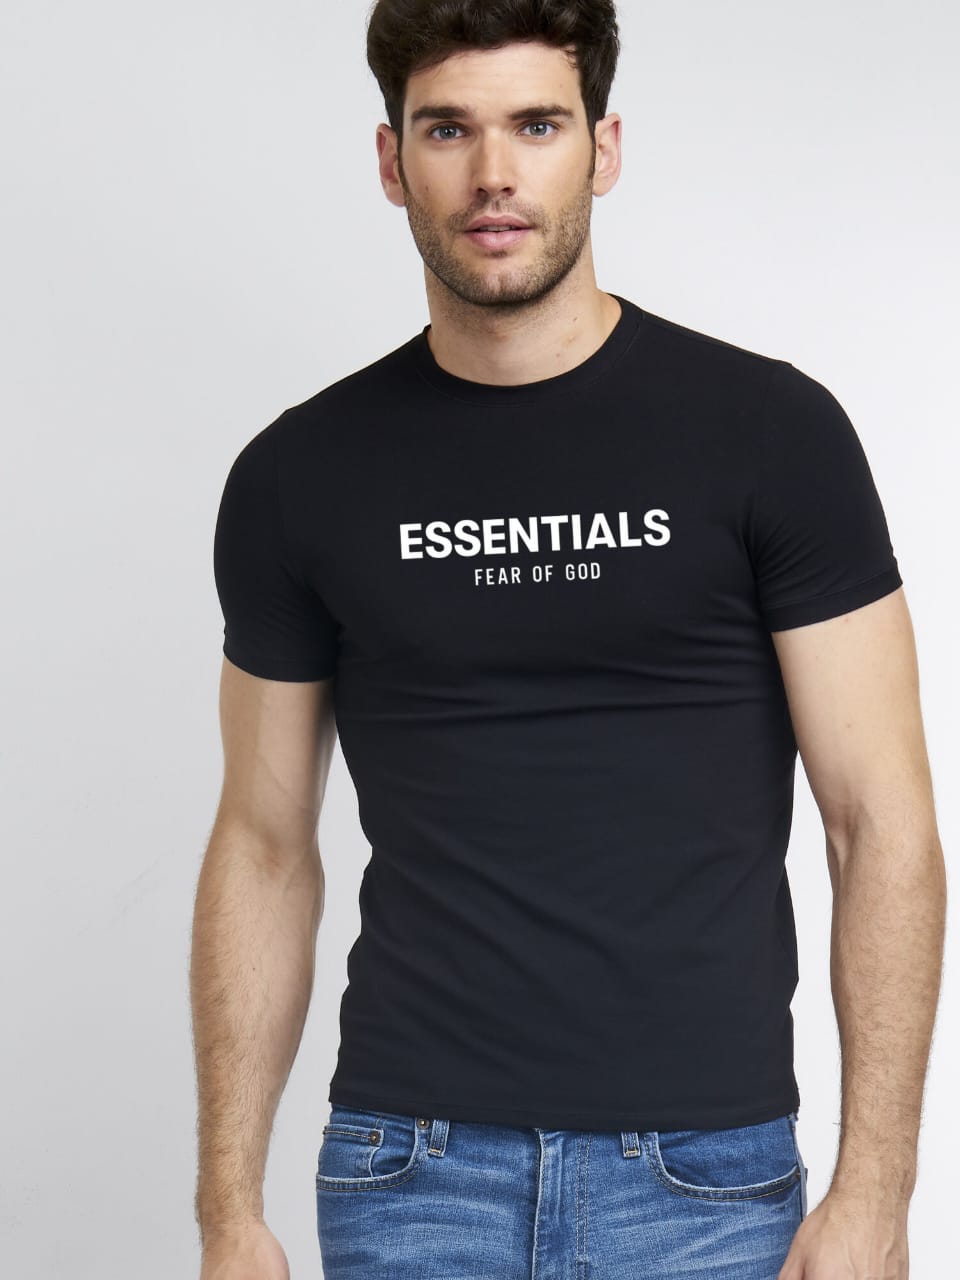 Men Typography Round Neck Cotton Blend Black T-Shirt